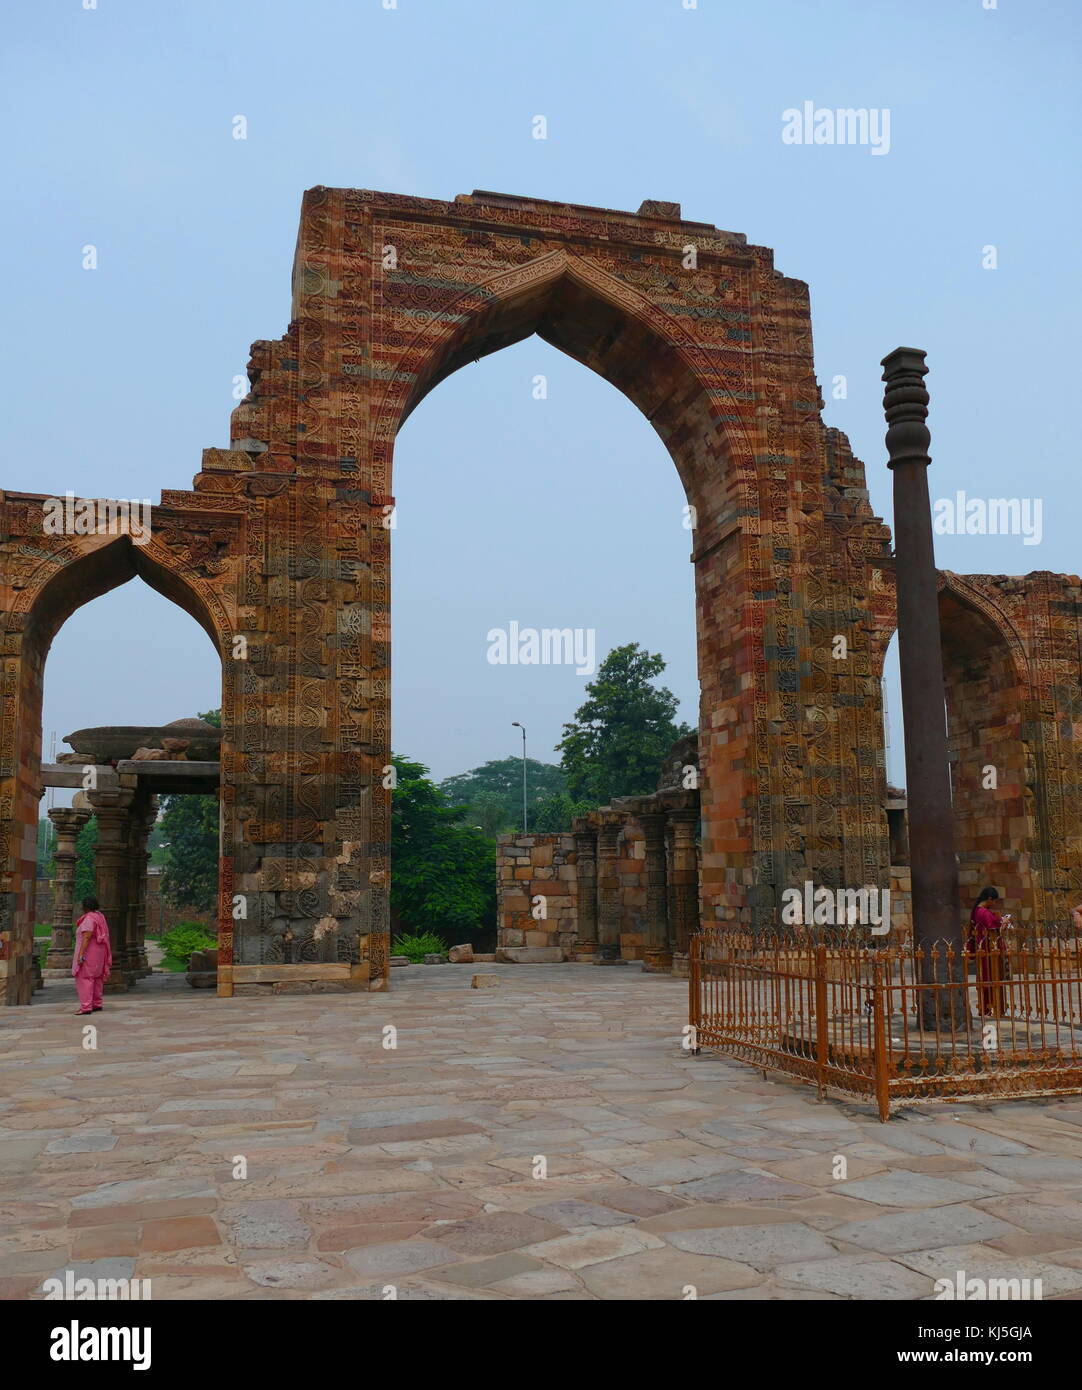 Die eiserne Säule in der qutb Komplex (Denkmäler und Gebäude), in Mehrauli in Delhi, Indien. Es ist ein 7 m (23 ft) Spalte, in der qutb Komplex, bemerkenswert für die rost-resistent, Zusammensetzung der Metalle, die in seinem Aufbau verwendet werden. Die Säule wiegt über 6.000 kg (13.000 lb) und ist gedacht, um die ursprünglich in, was jetzt Udayagiri durch einen der Gupta Monarchen in ca. 402 CE wurden errichtet. Stockfoto